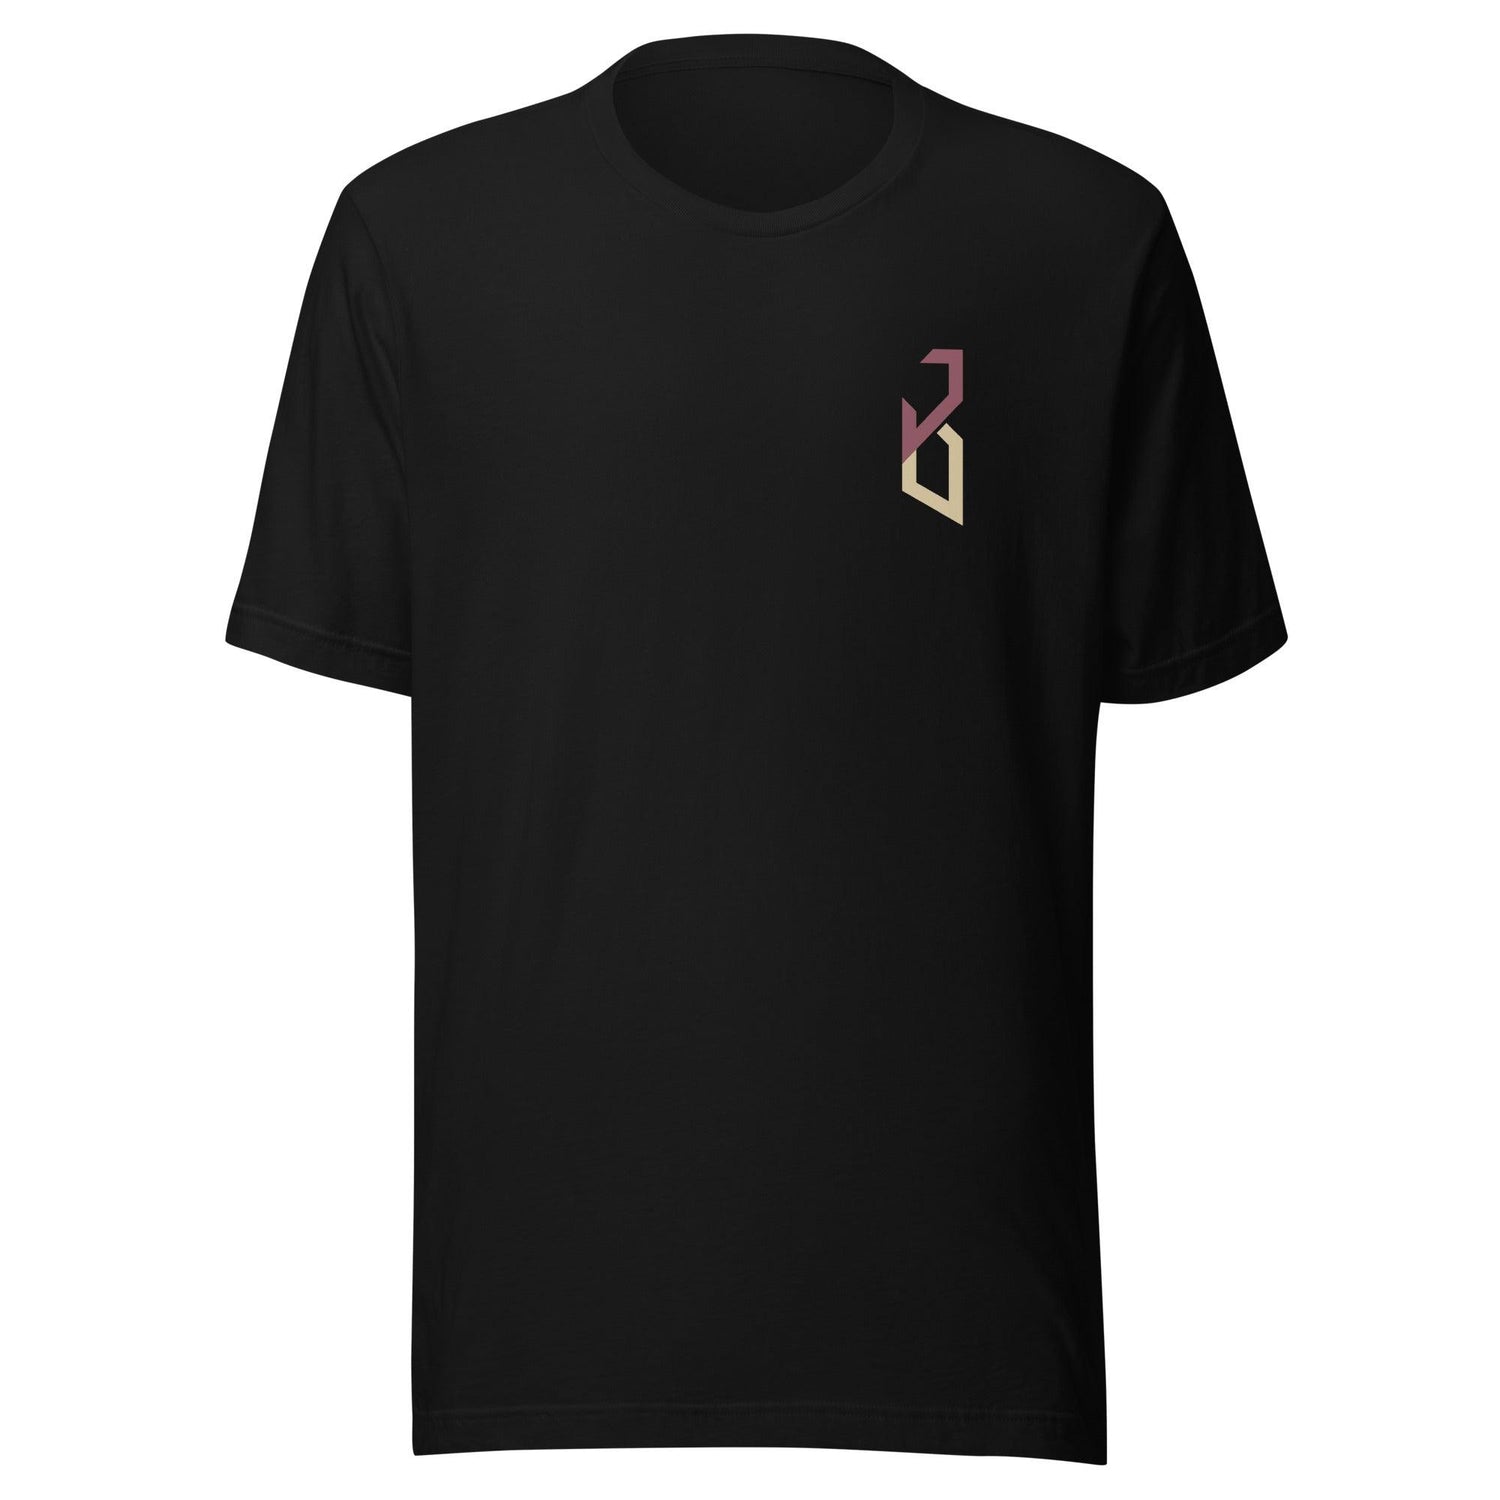 Jaysoni Beachum "Essential" t-shirt - Fan Arch